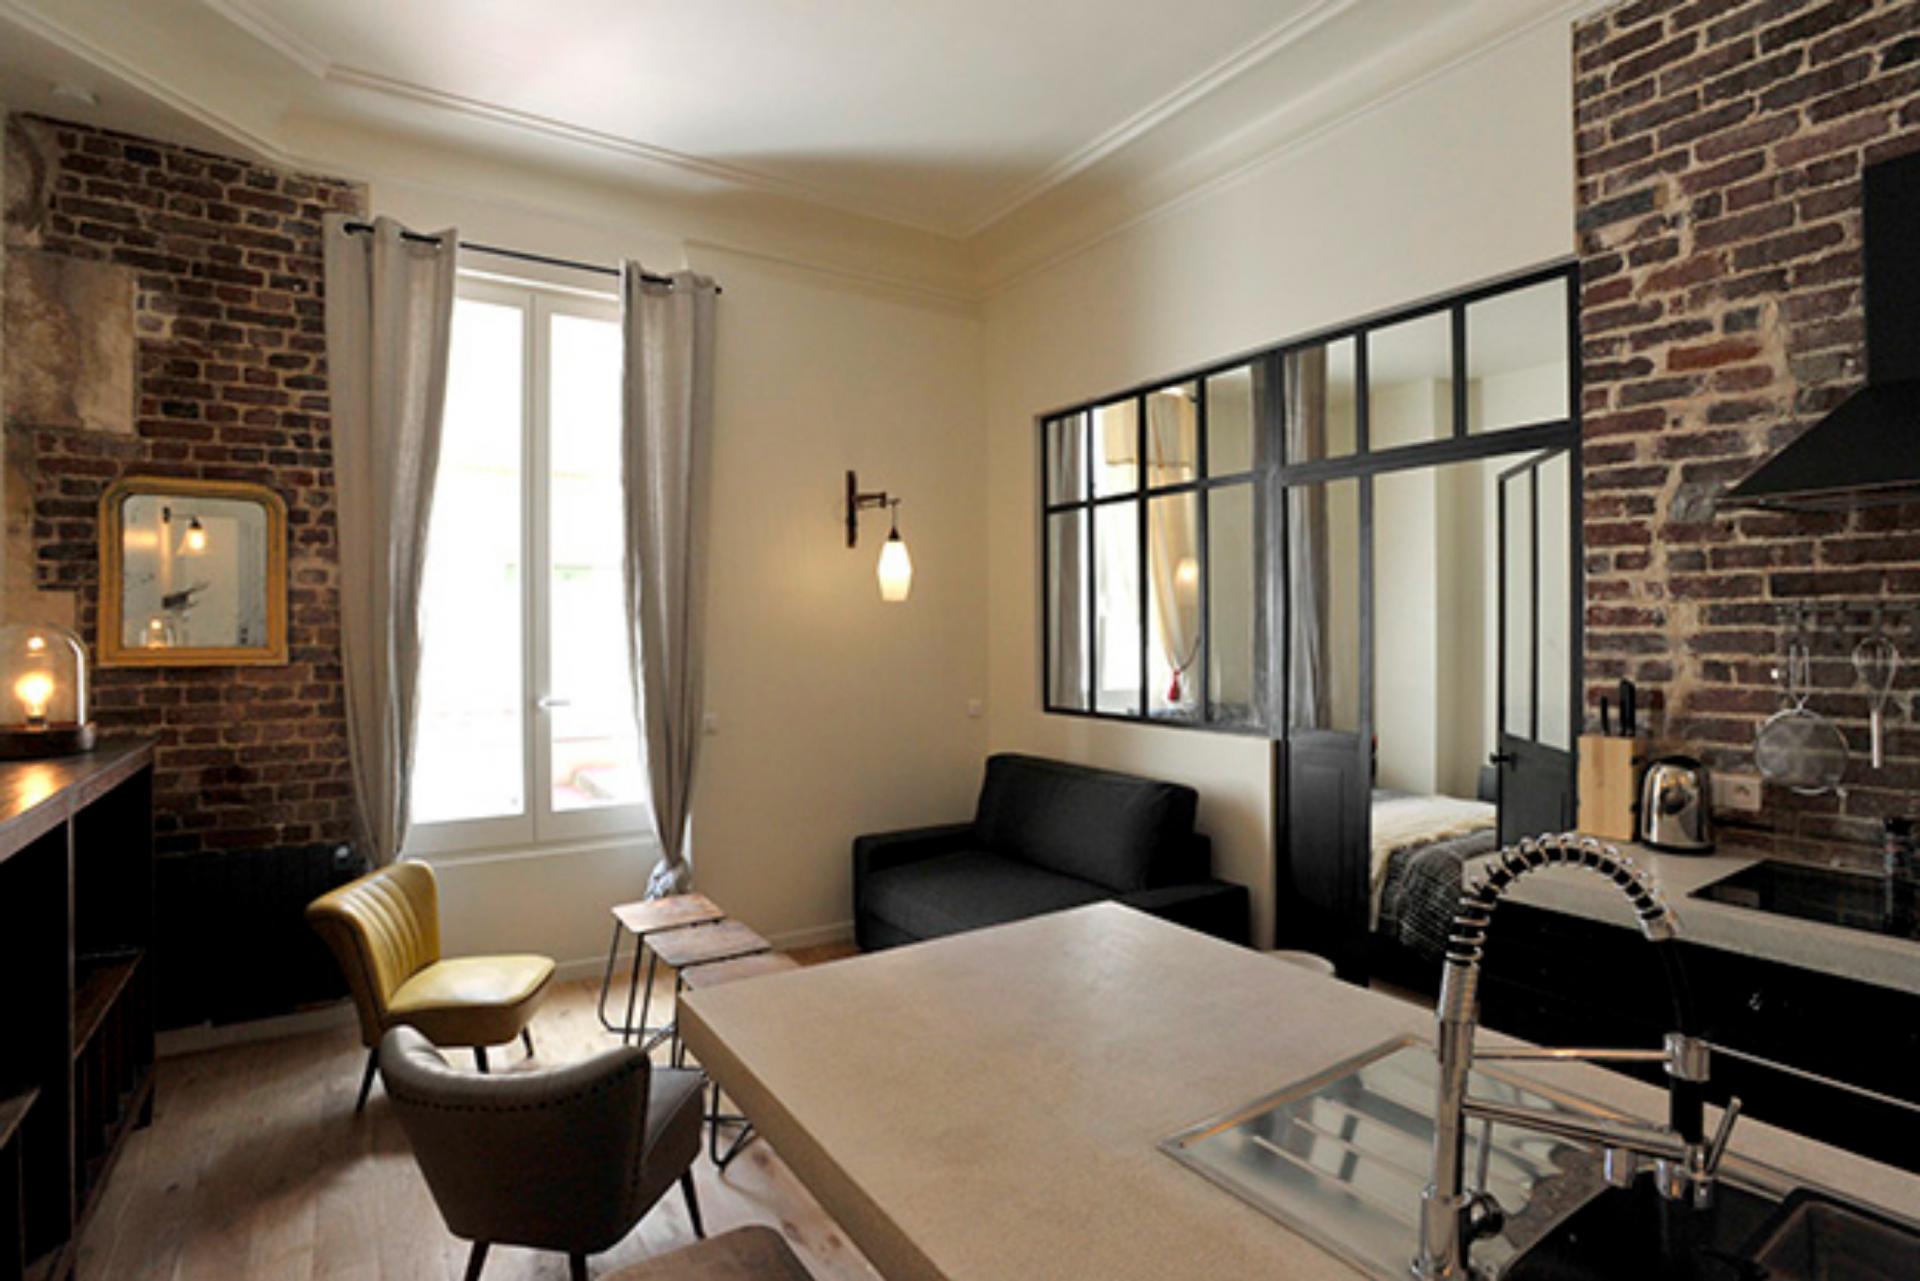 République - Beautiful loft for expats in Paris